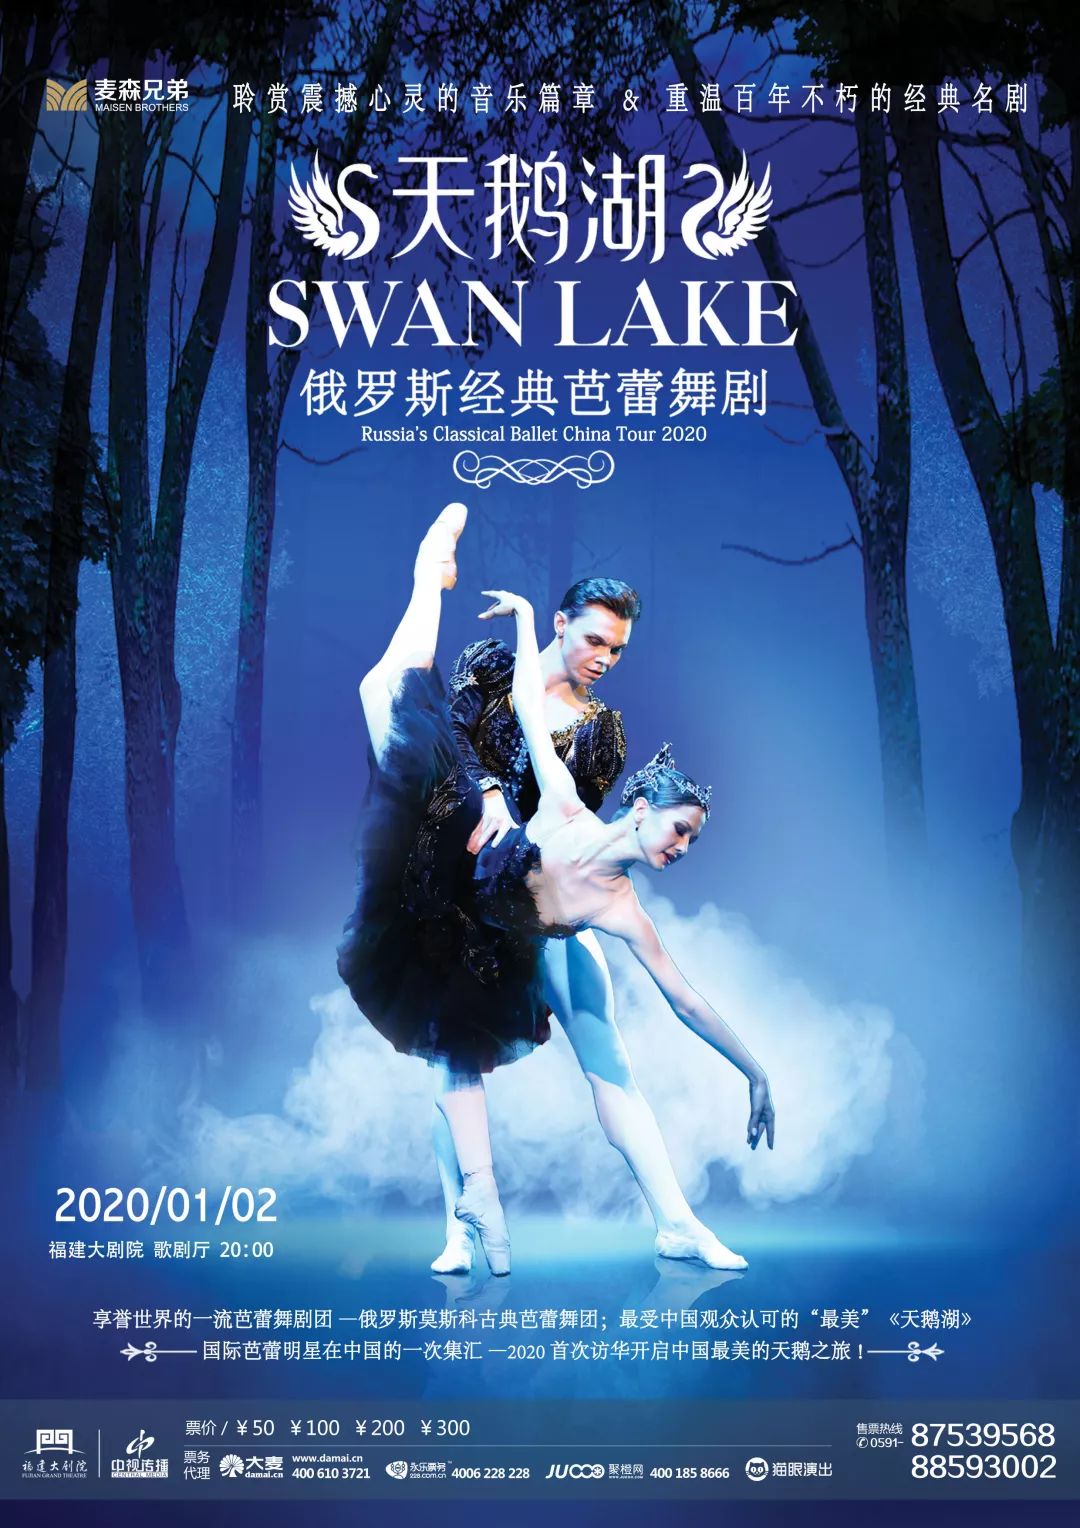 即将上演古典芭蕾舞剧天鹅湖胡桃夹子用妙曼舞姿对你说冬天快乐